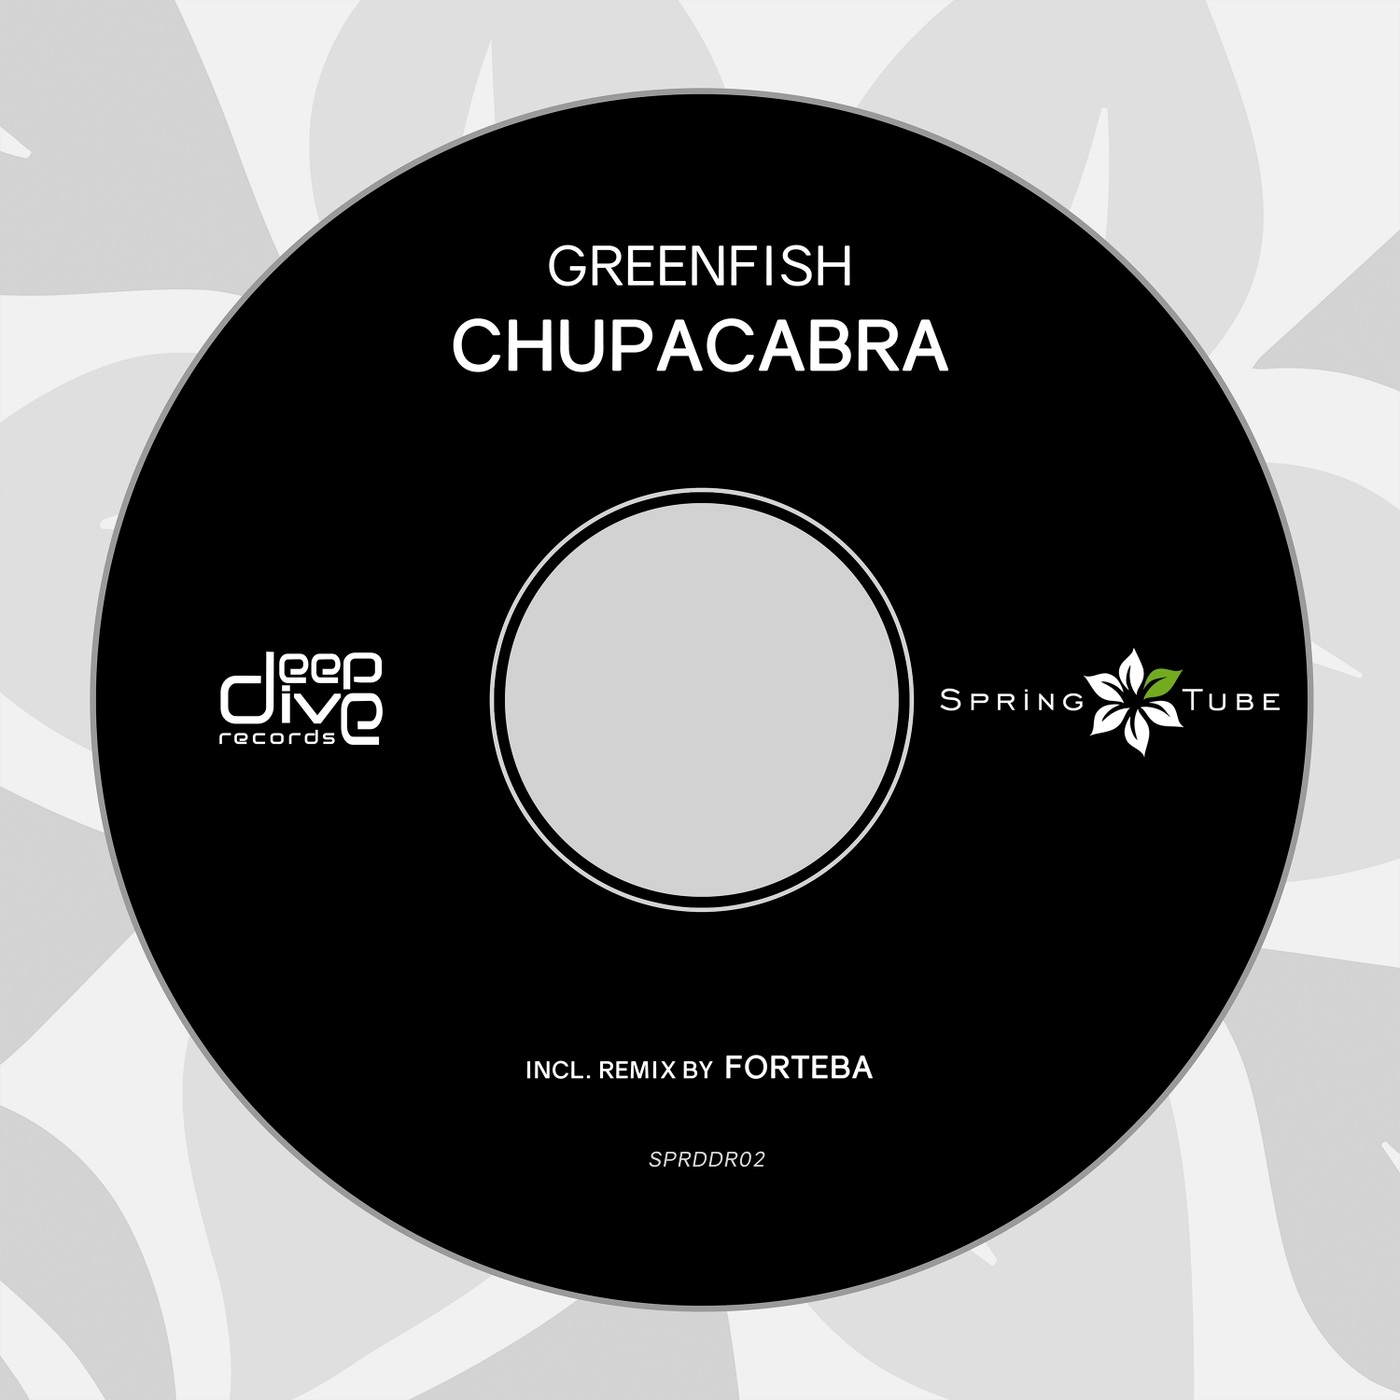 Greenfish - Chupacabra / Spring Tube